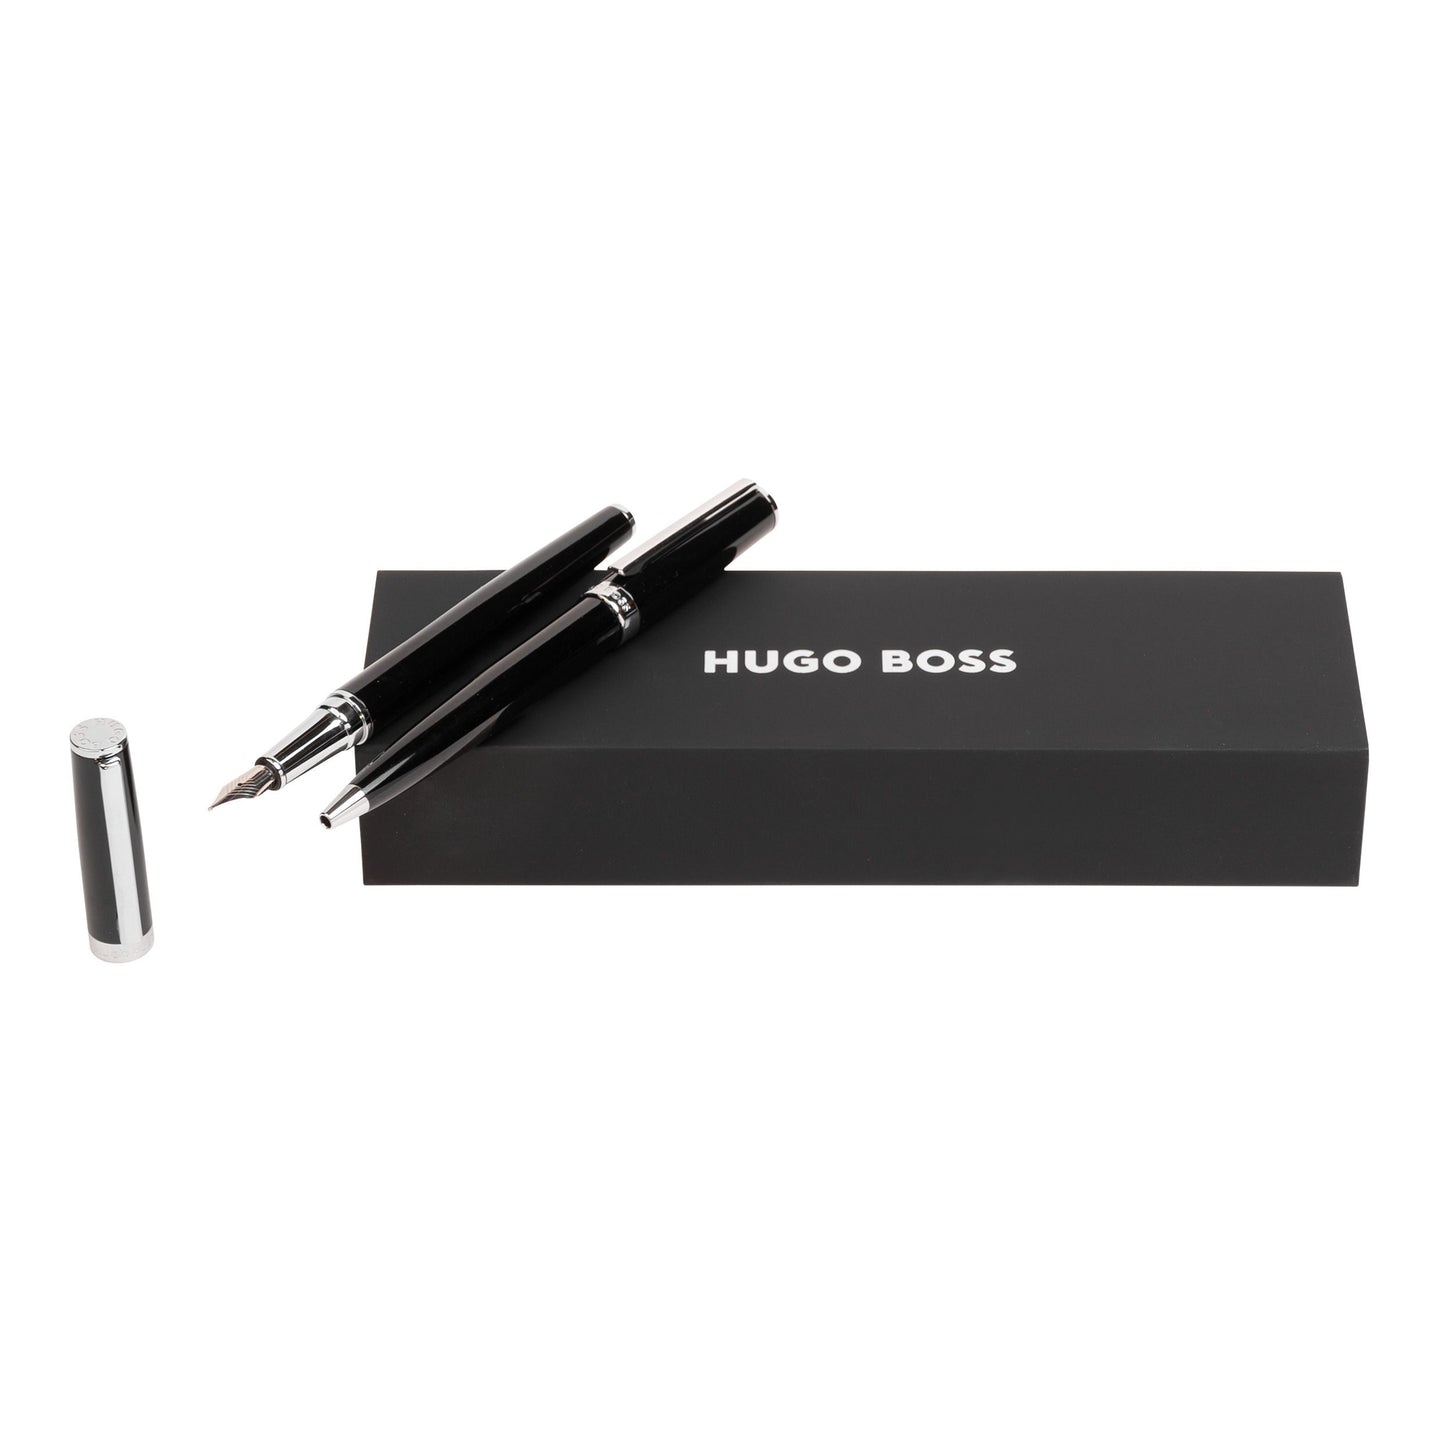 Hugo Boss Schreibset GEAR ICON Black | Kugelschreiber und Füllfederhalter